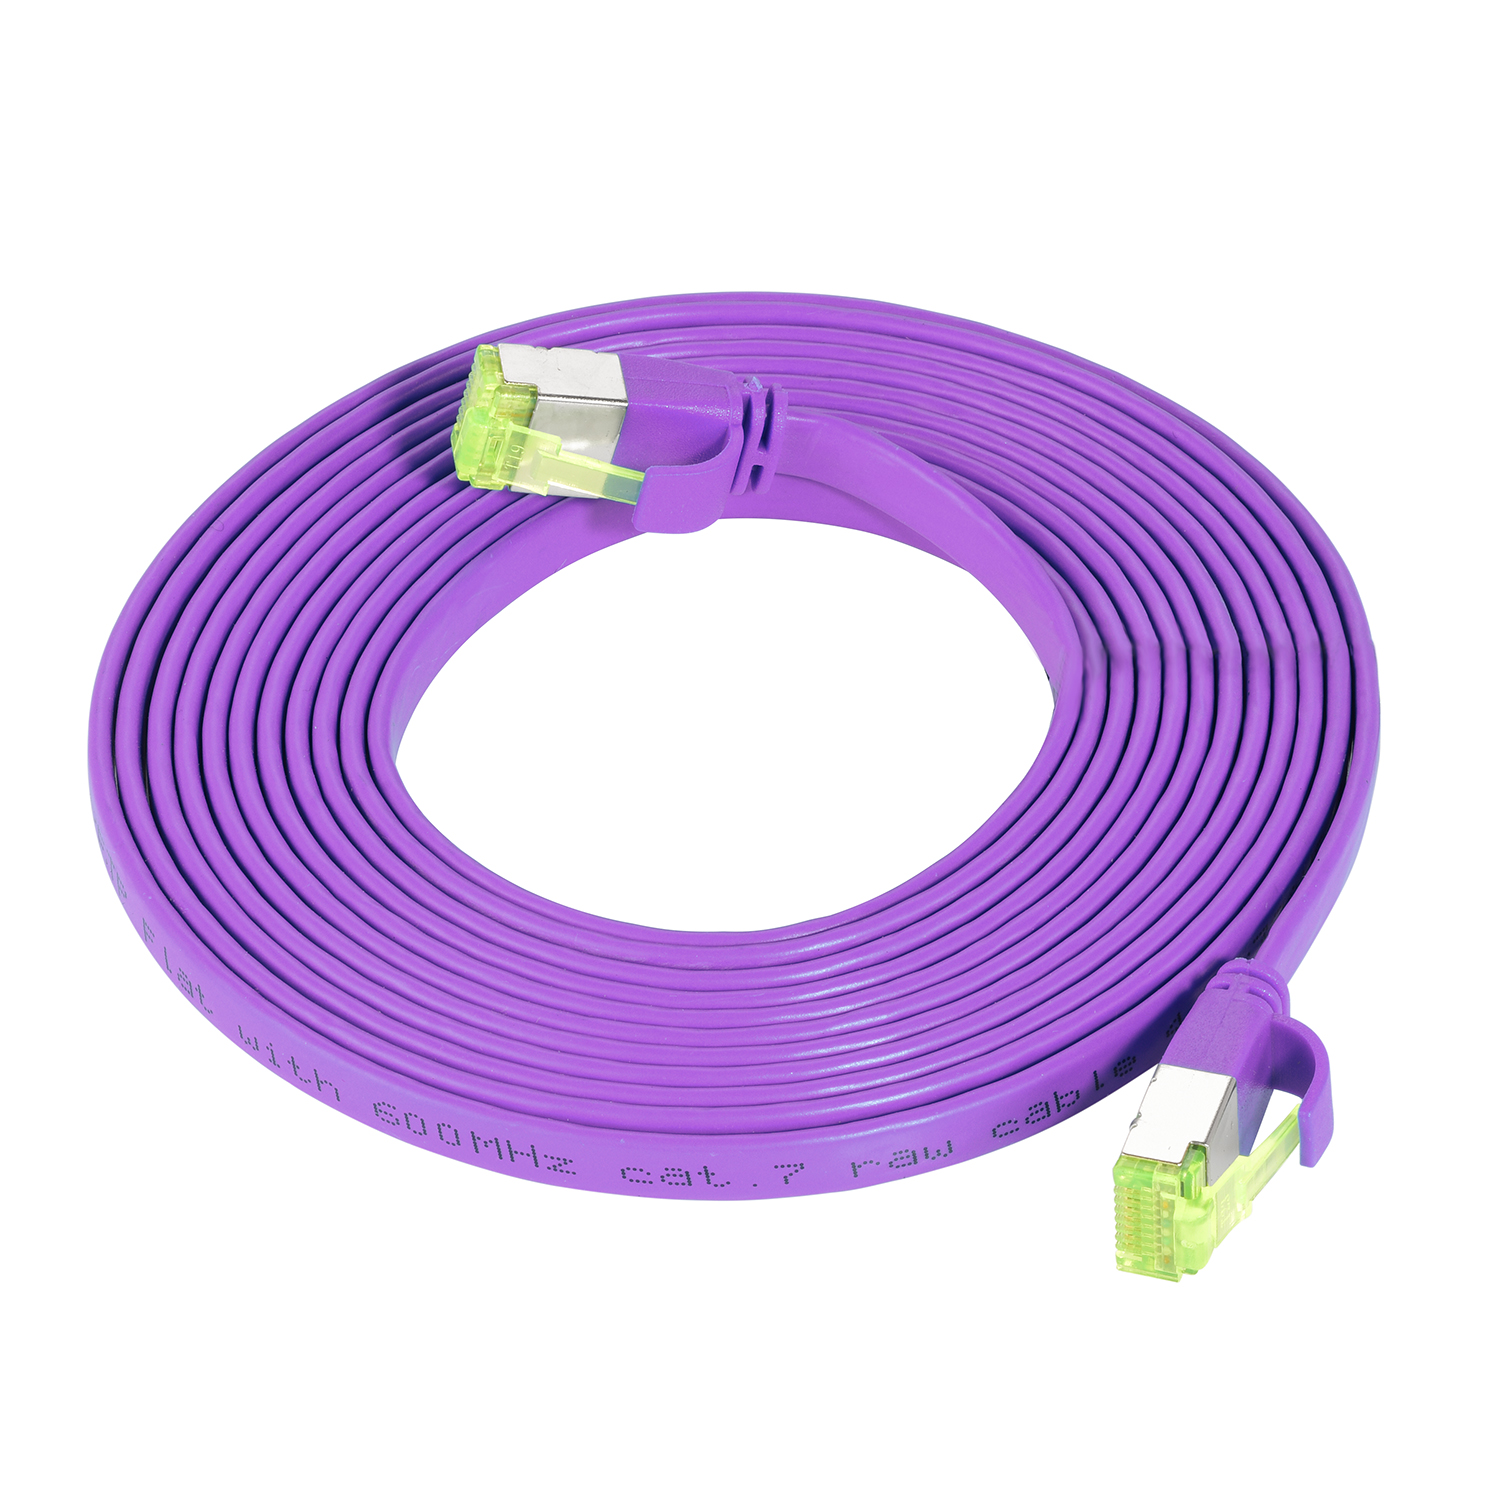 TPFNET 40m Patchkabel / GBit, m Netzwerkkabel, Flachkabel 40 10 violett, U/FTP